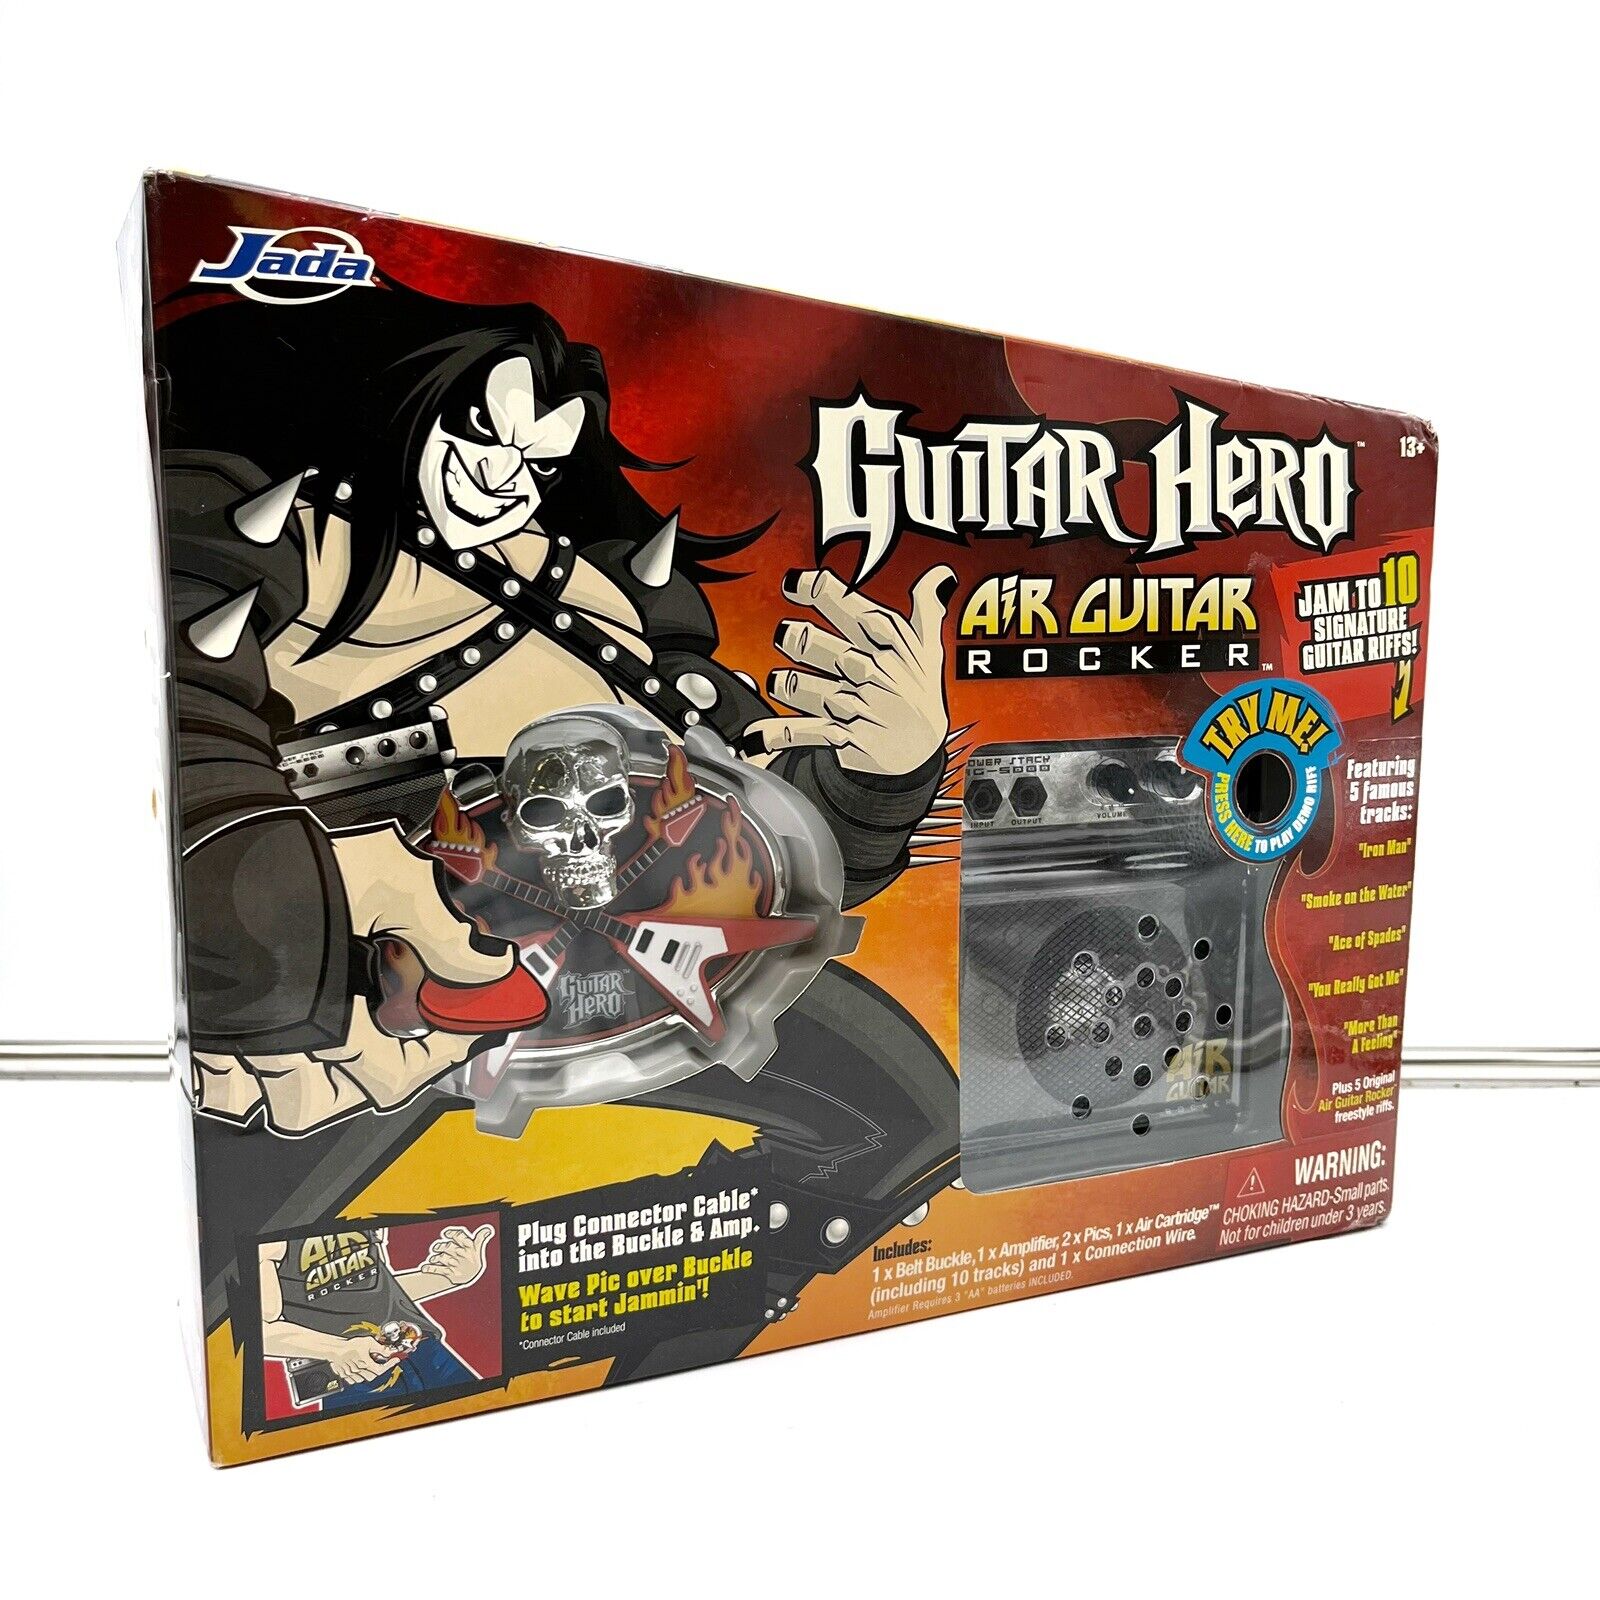 Guitar Hero Air Guitar Rocker JADA Sealed In Box 2008